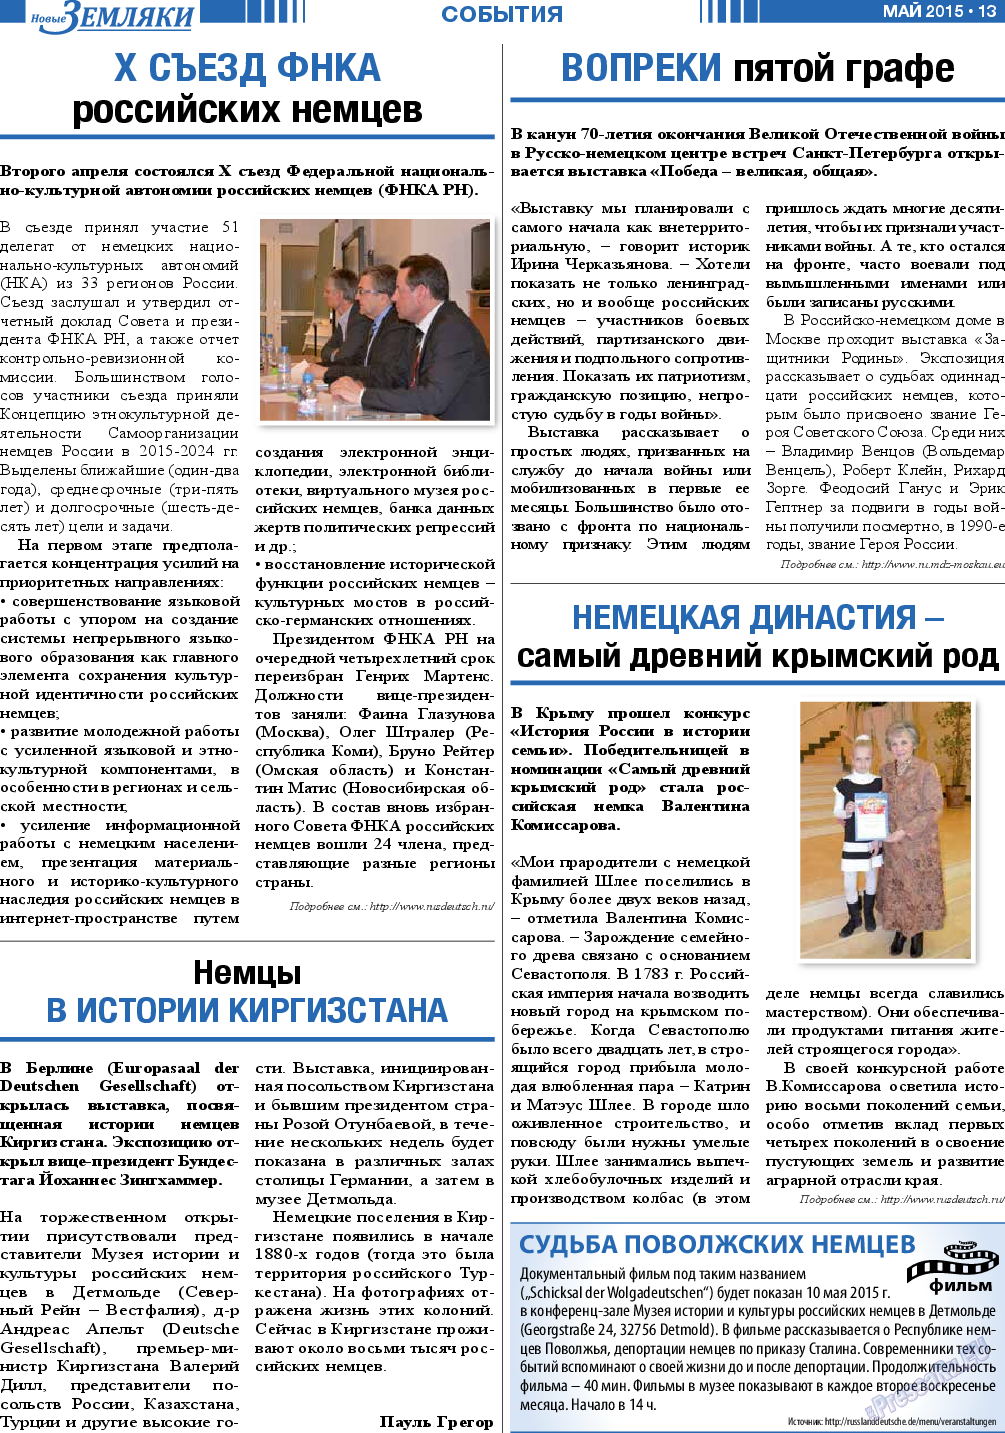 Новые Земляки, газета. 2015 №5 стр.13